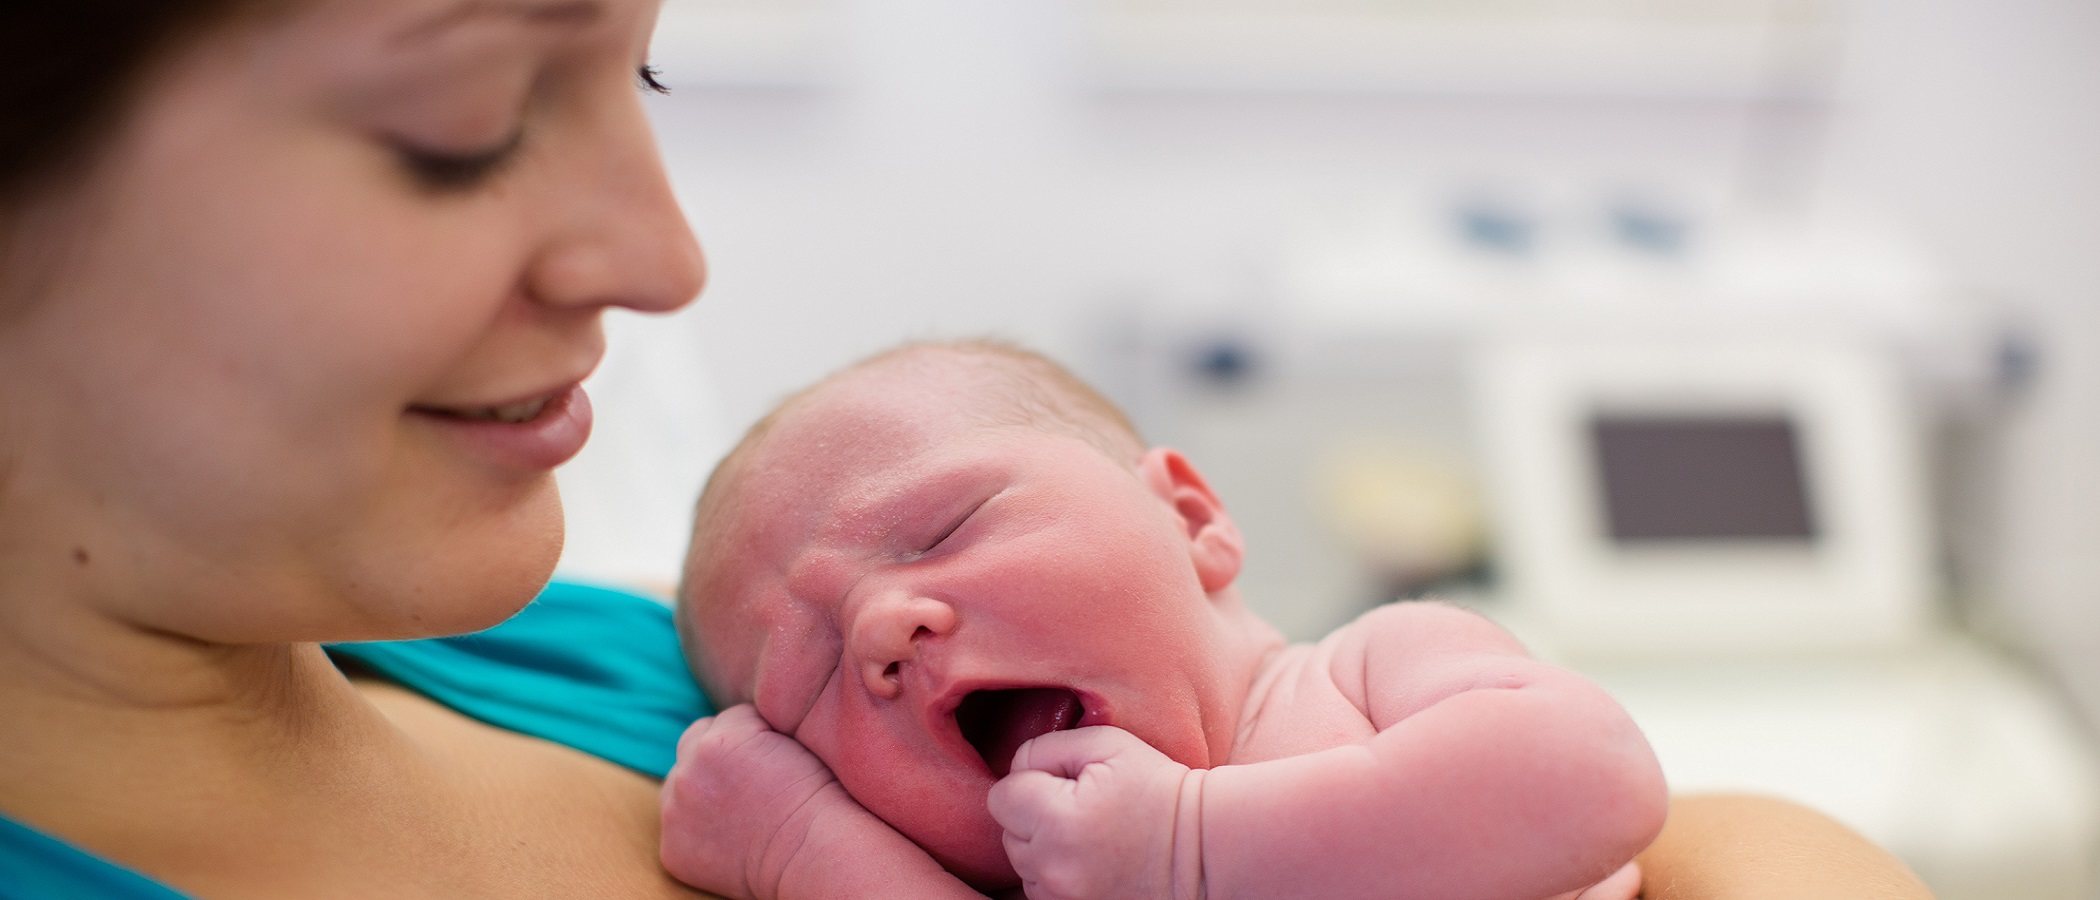 Comunicación no verbal entre una madre y su bebé recién nacido